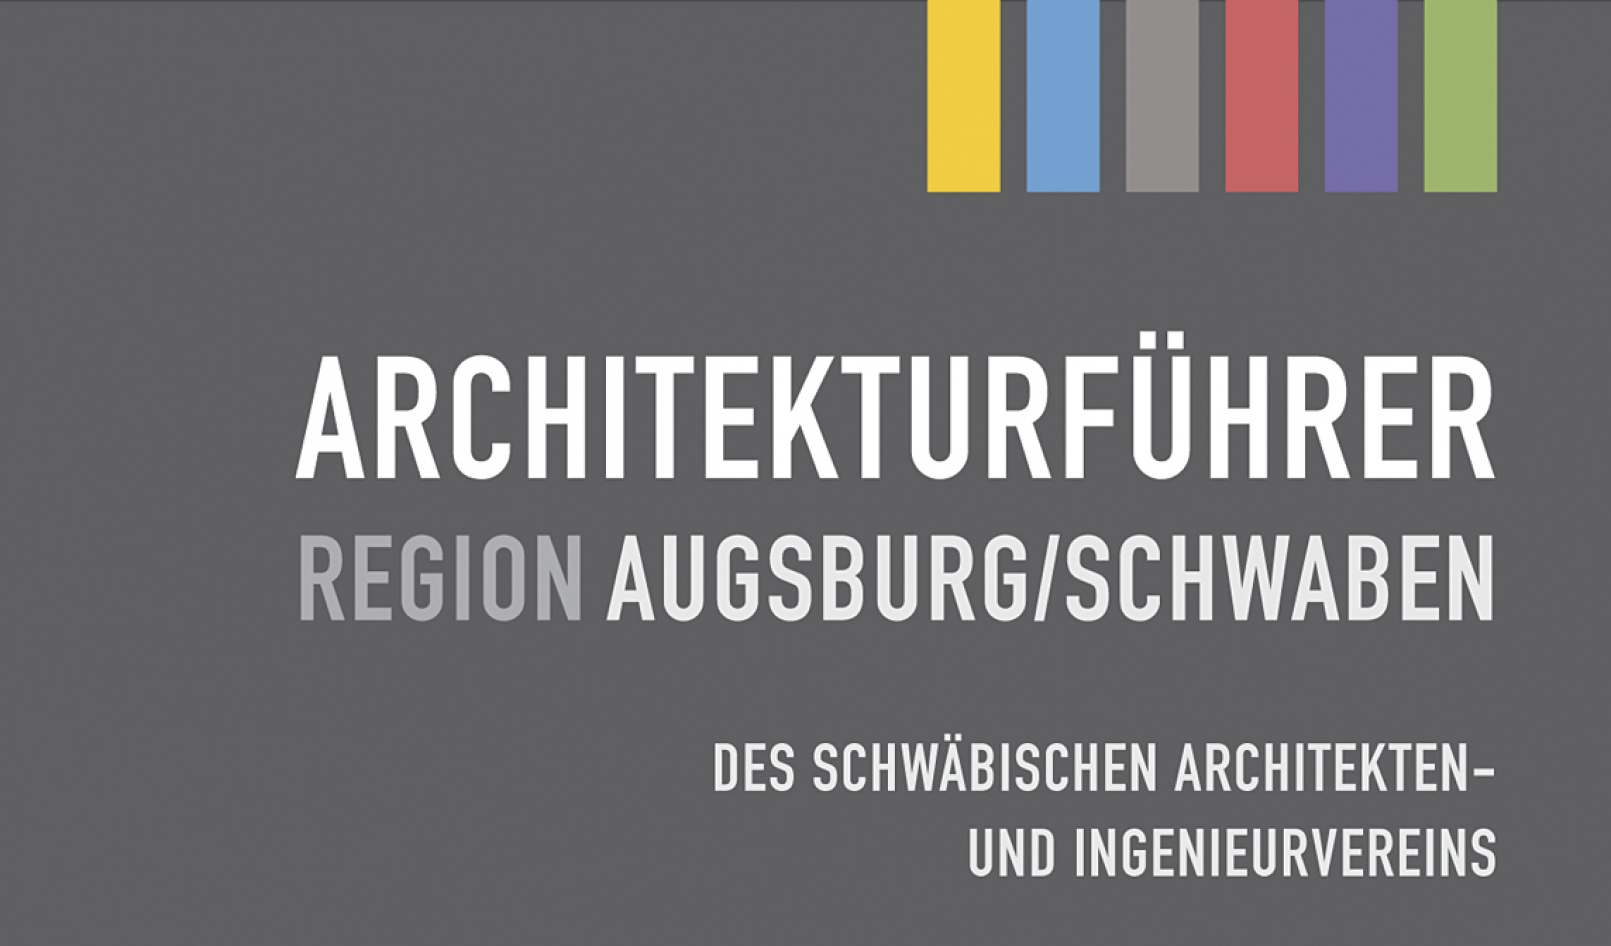 fritsch-tschaidse_architekten_architekturfuehrer-region-augsburgschwaben